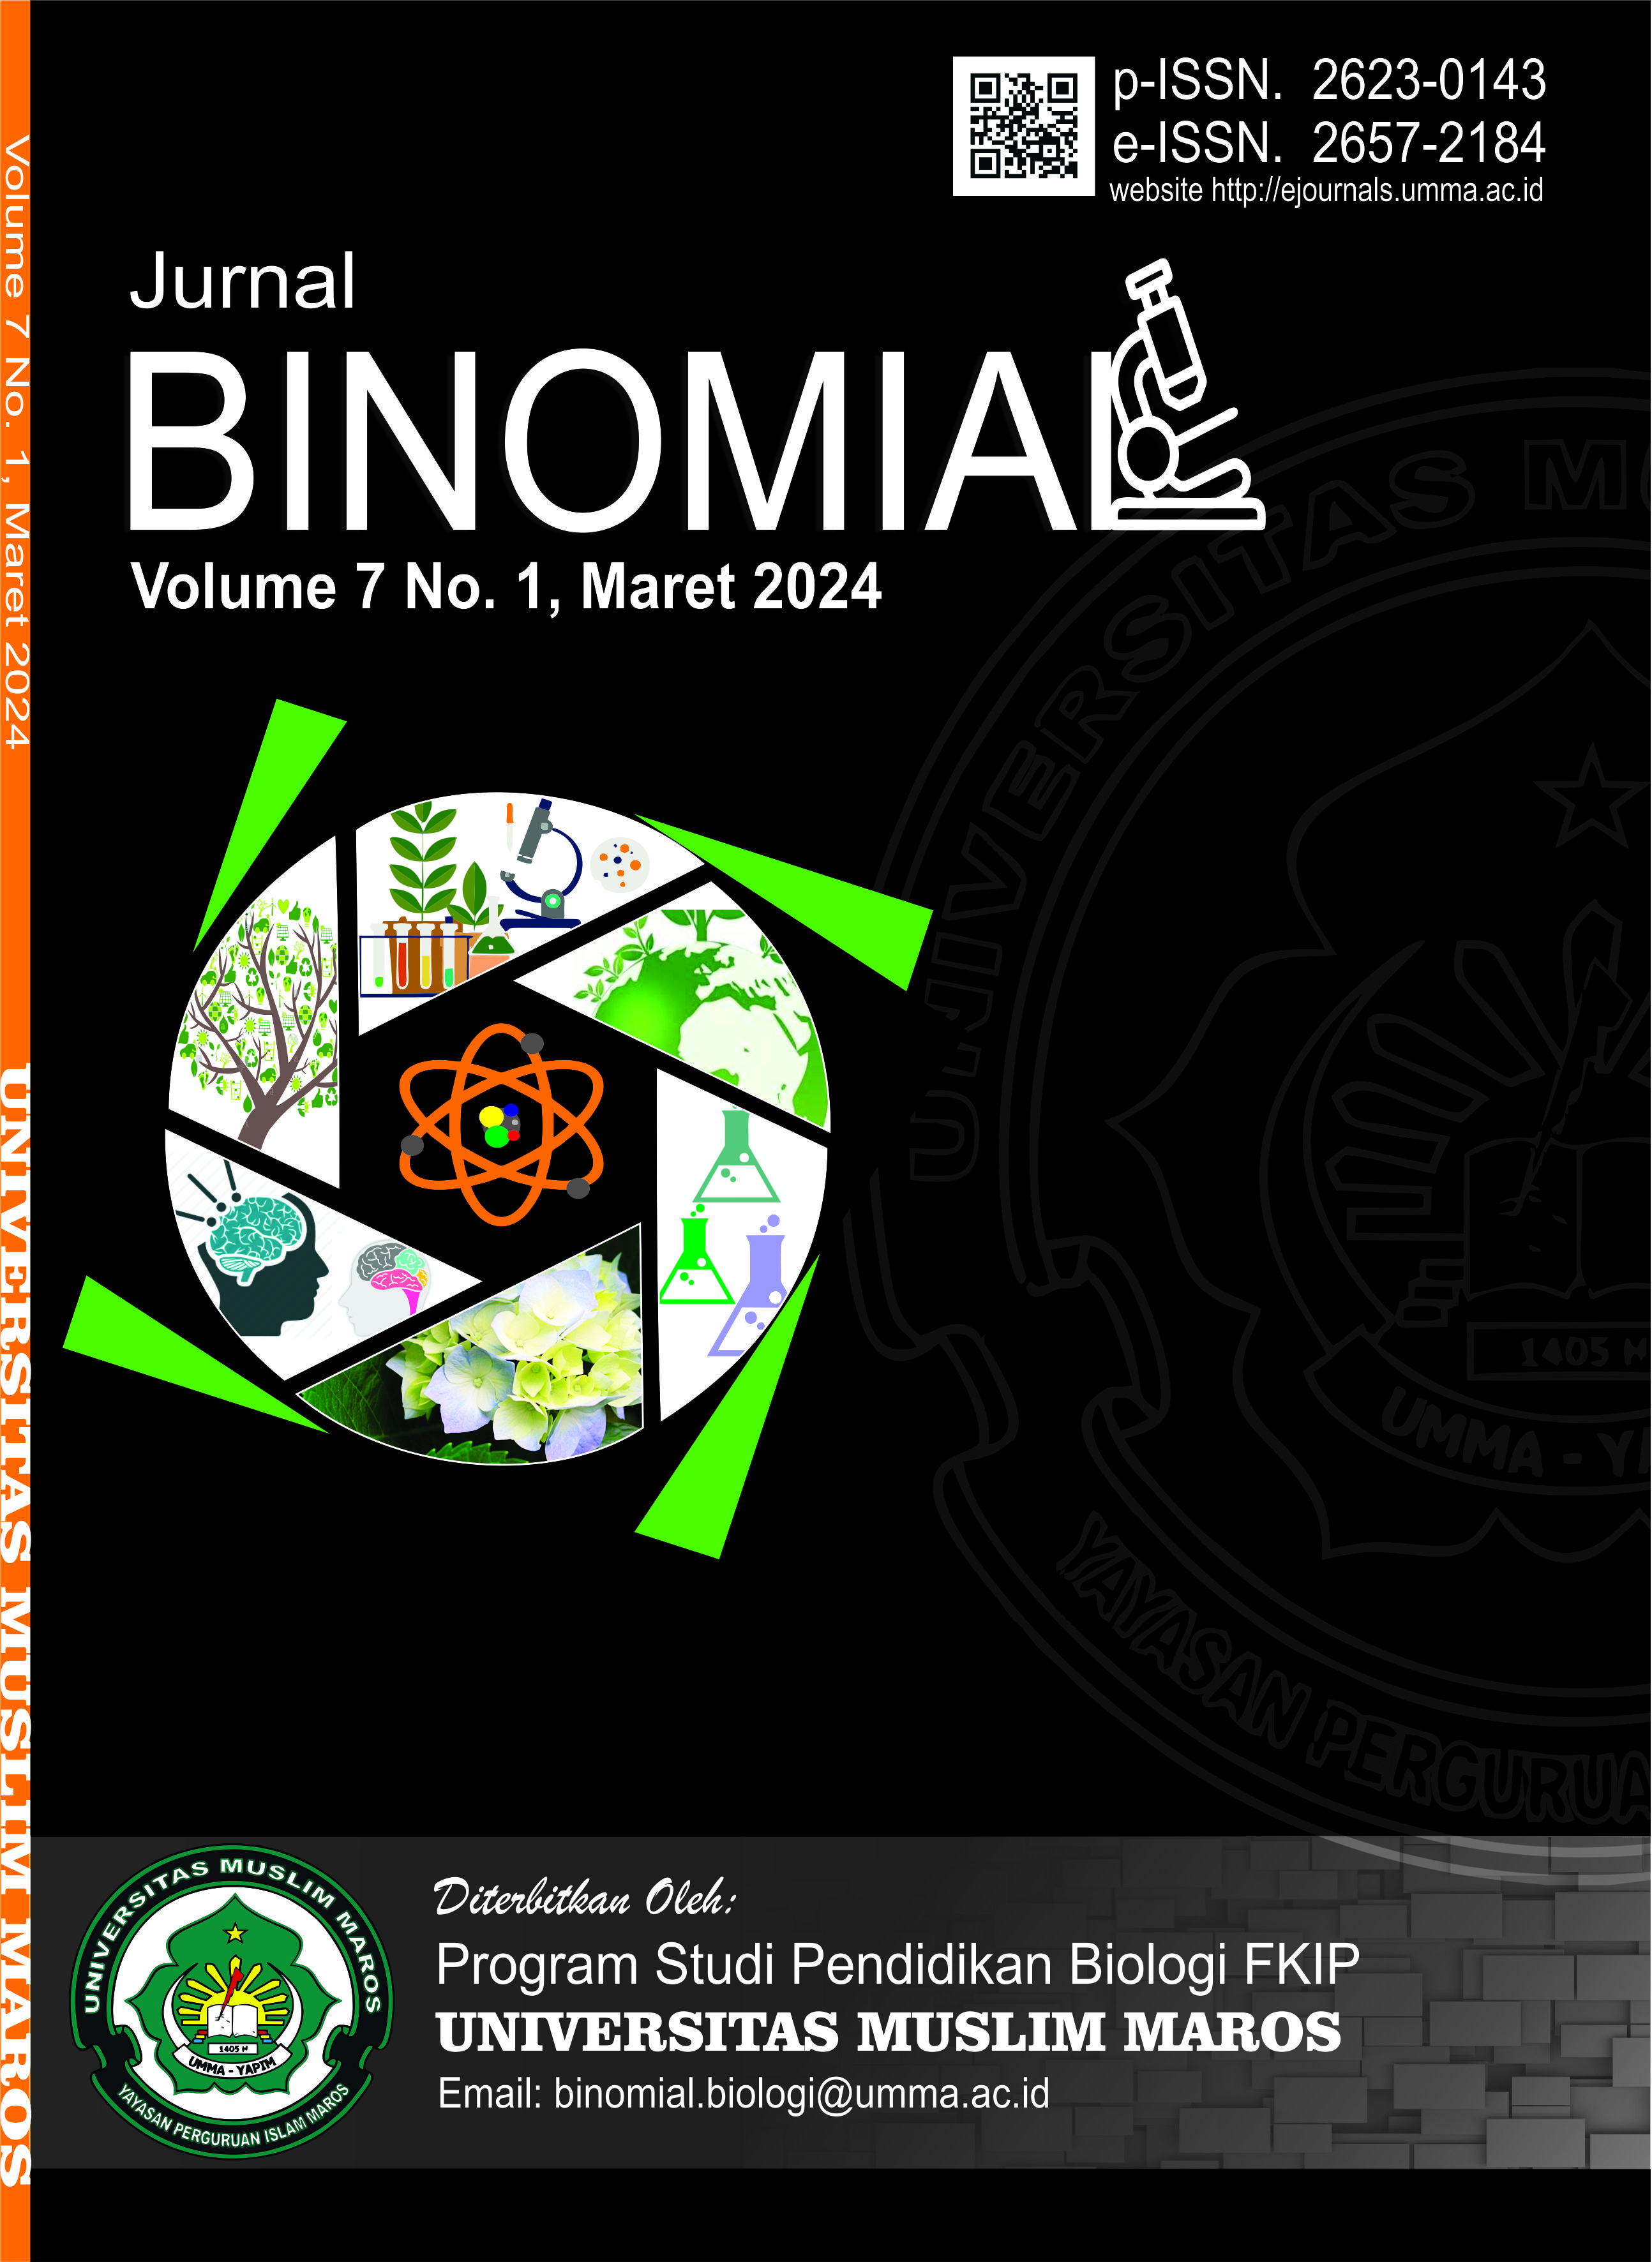 Binomial: Volume 7 No. 1